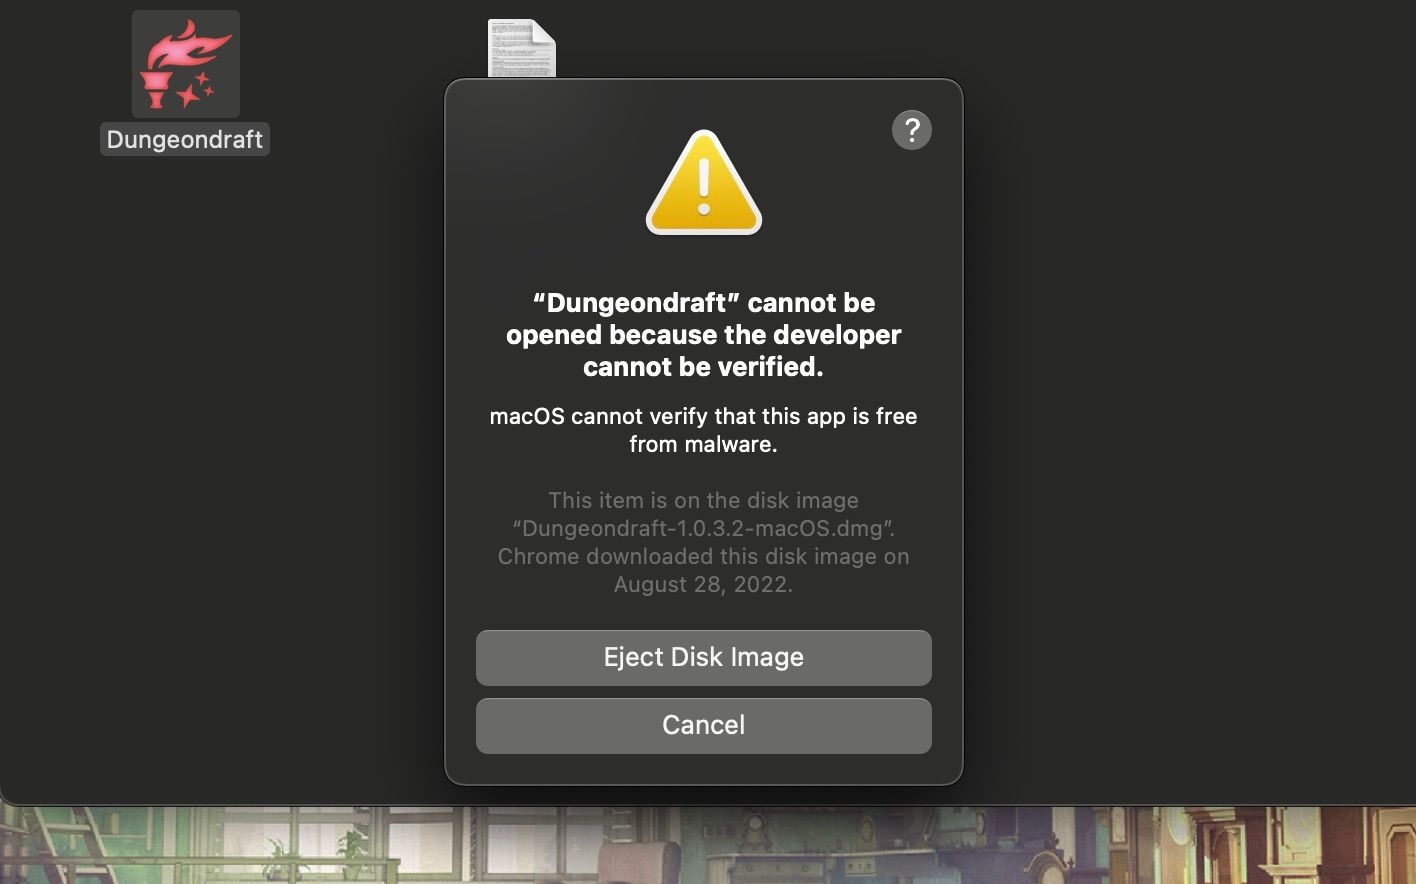 Penjaga gerbang memverifikasi instalasi Dungeondraft di macOS